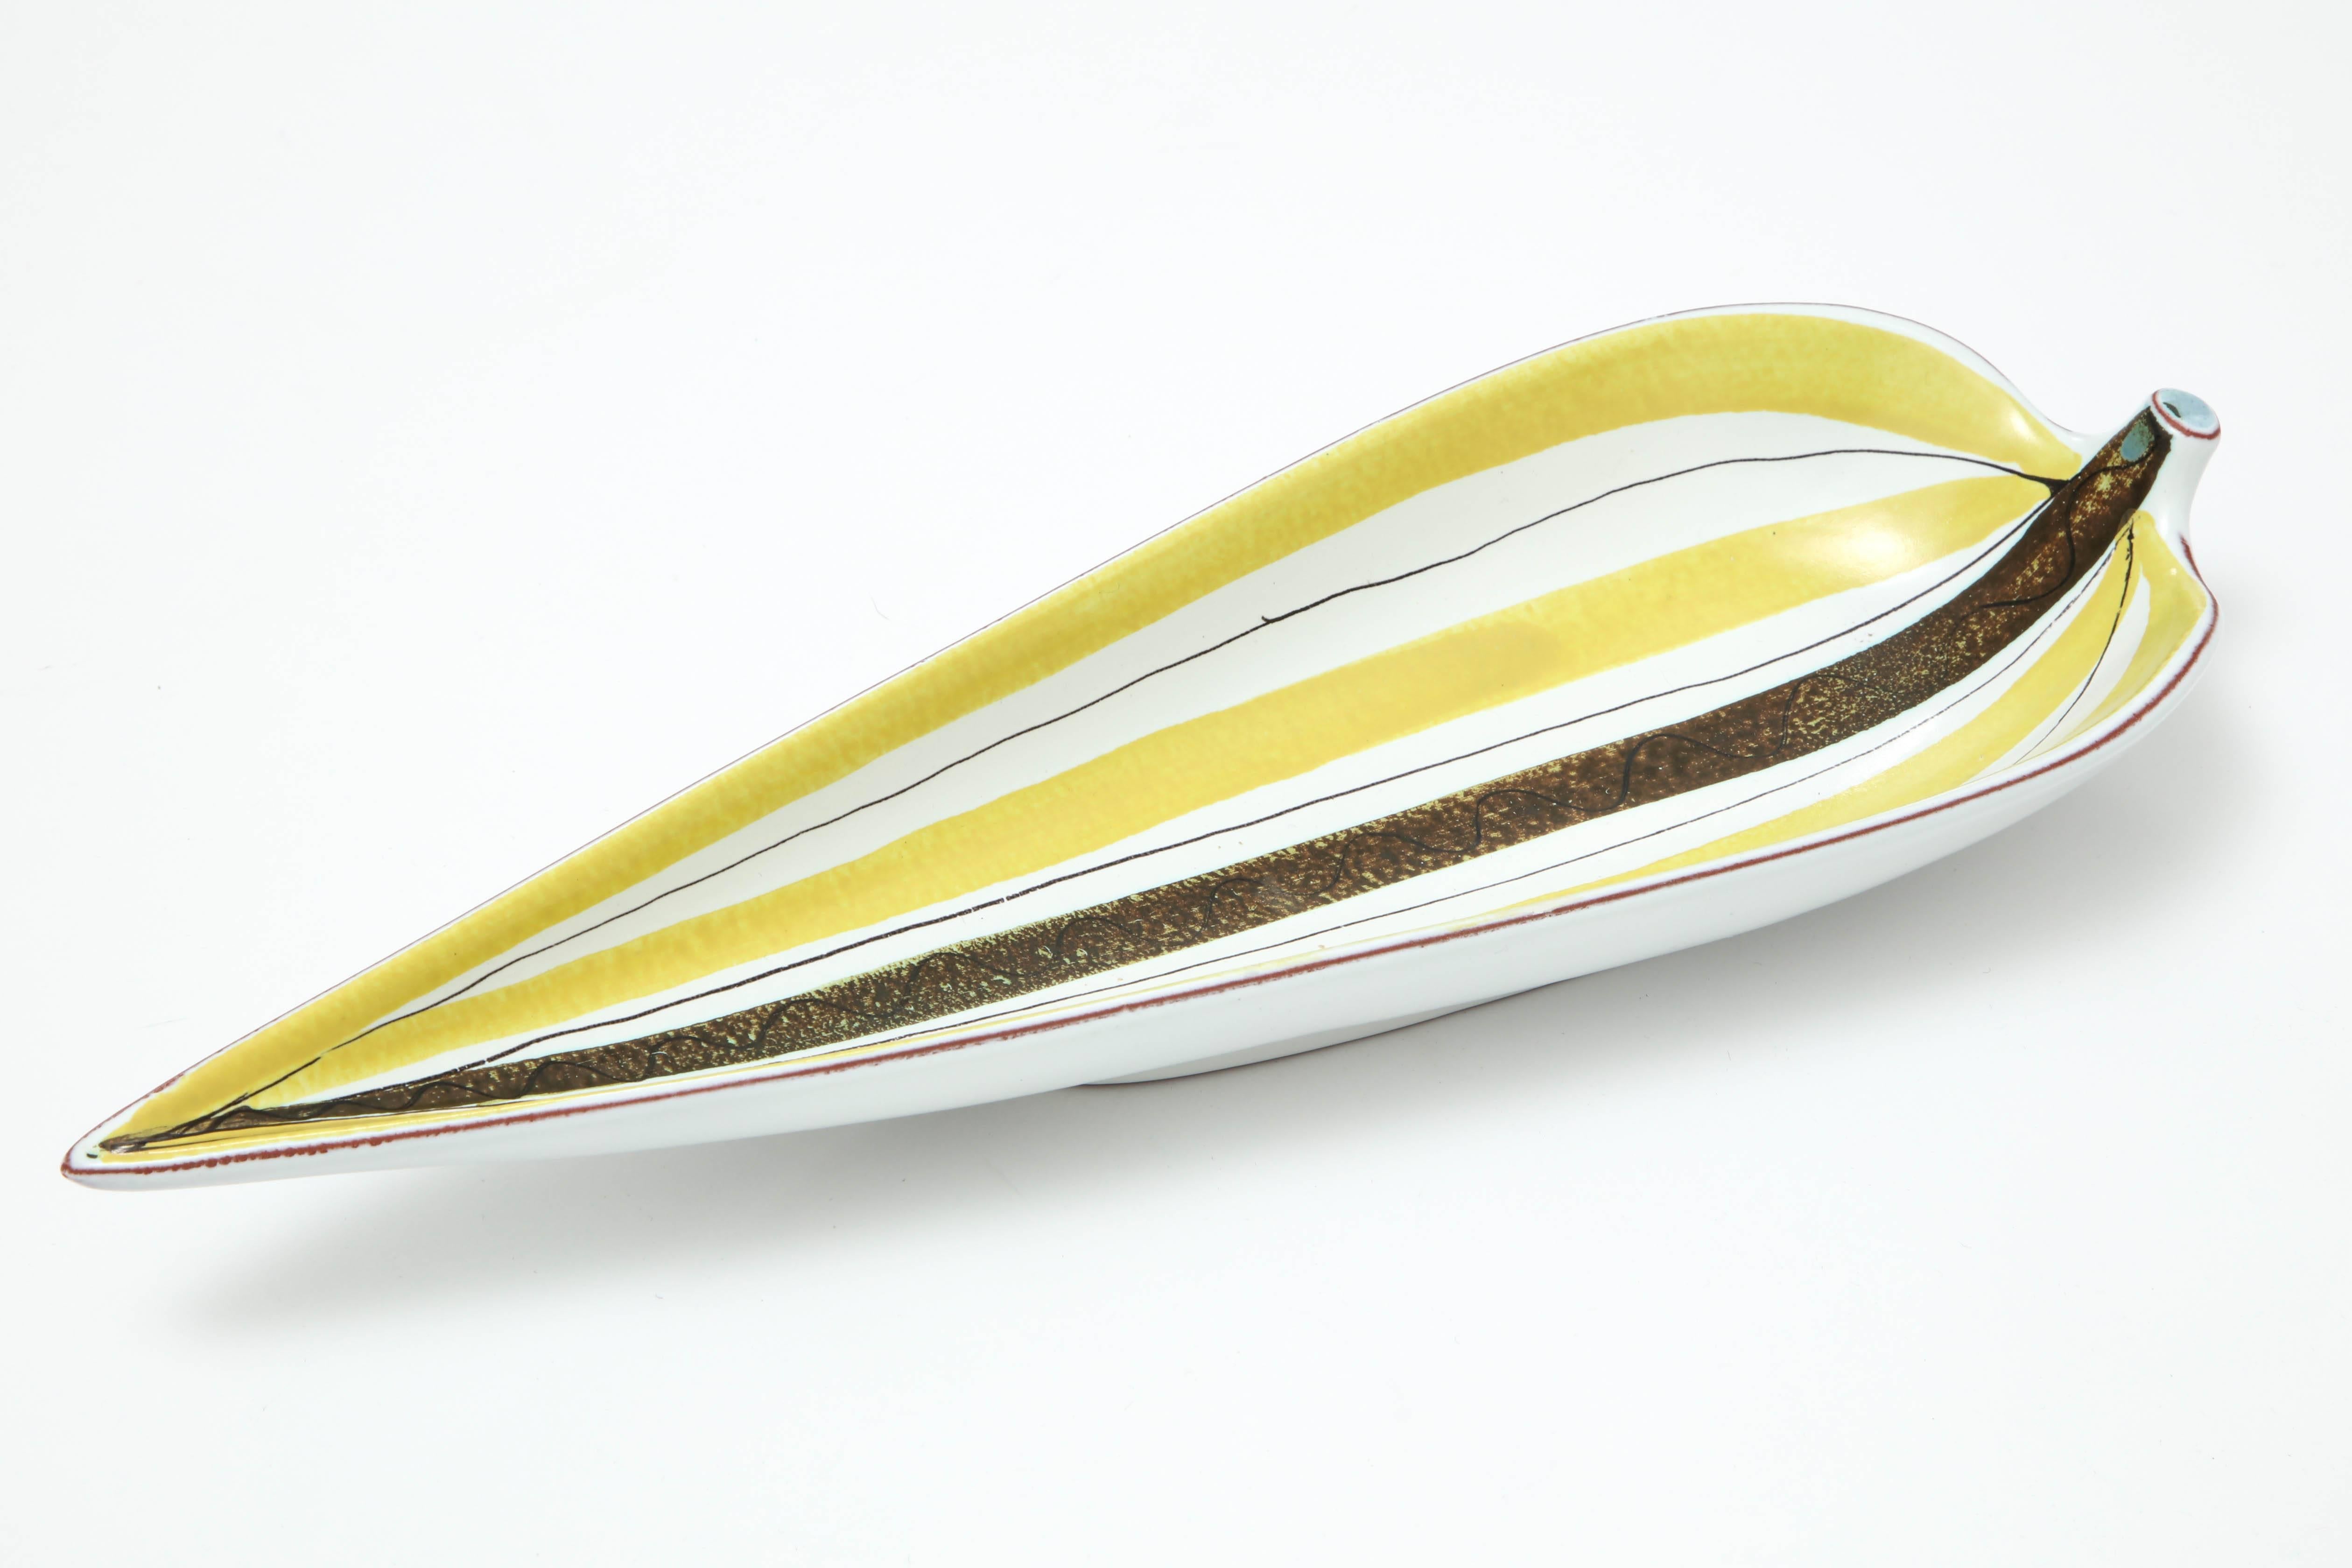 Dekorative Fayence-Schale von Stig Lindberg, Schweden, um 1950. Die Schale in Form eines Blattes wird von Gustavsbergs Fabrik hergestellt.
Als künstlerischer Tausendsassa war Stig Lindberg in den Bereichen Industriedesign, Textildesign, Malerei,